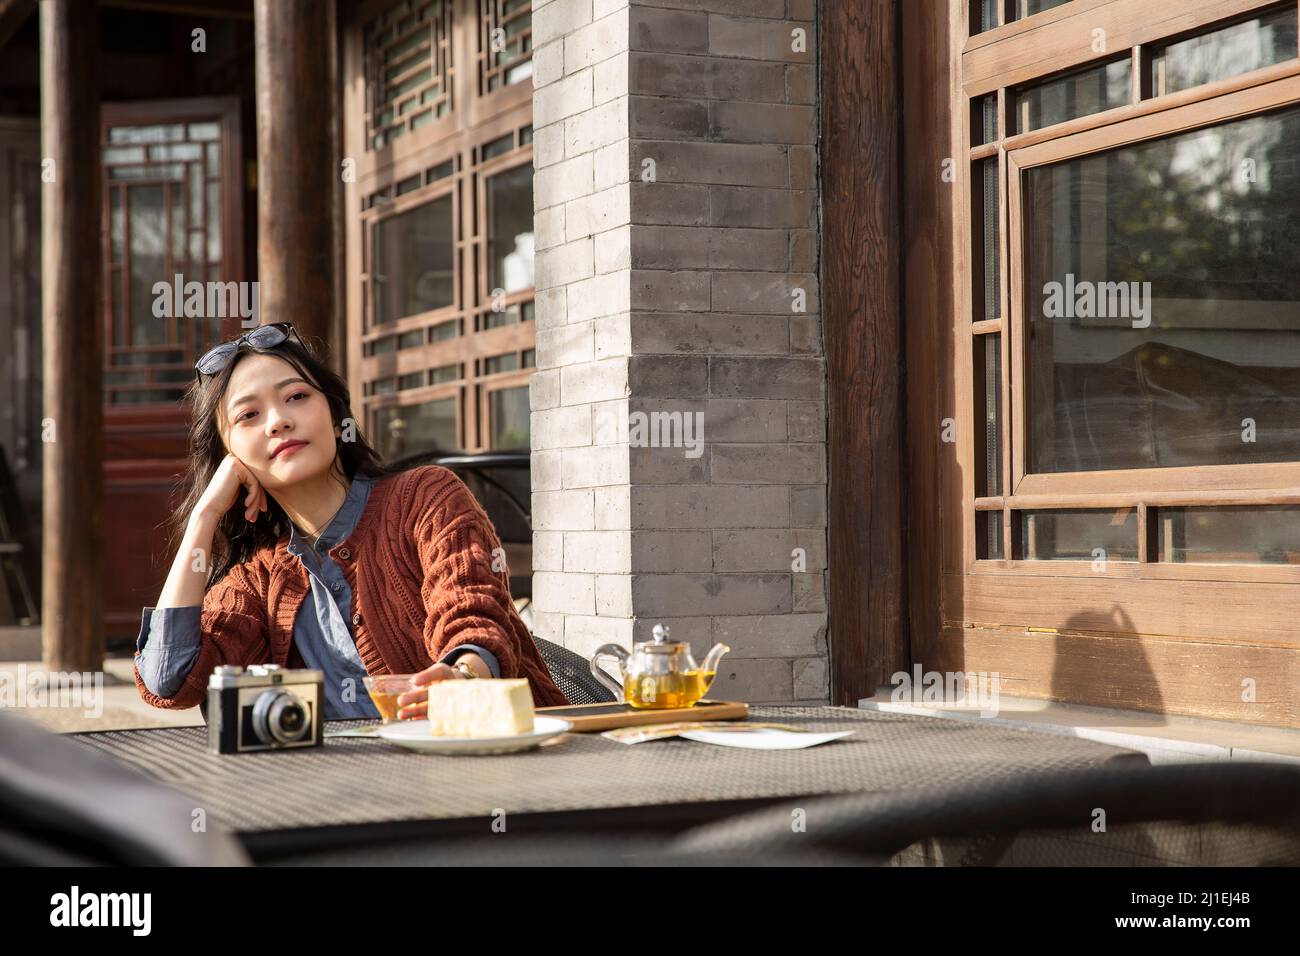 Chinesische Frau mit weißem Kragen genießt das Leben im Bürgersteig-Café - Stock-Foto Stockfoto